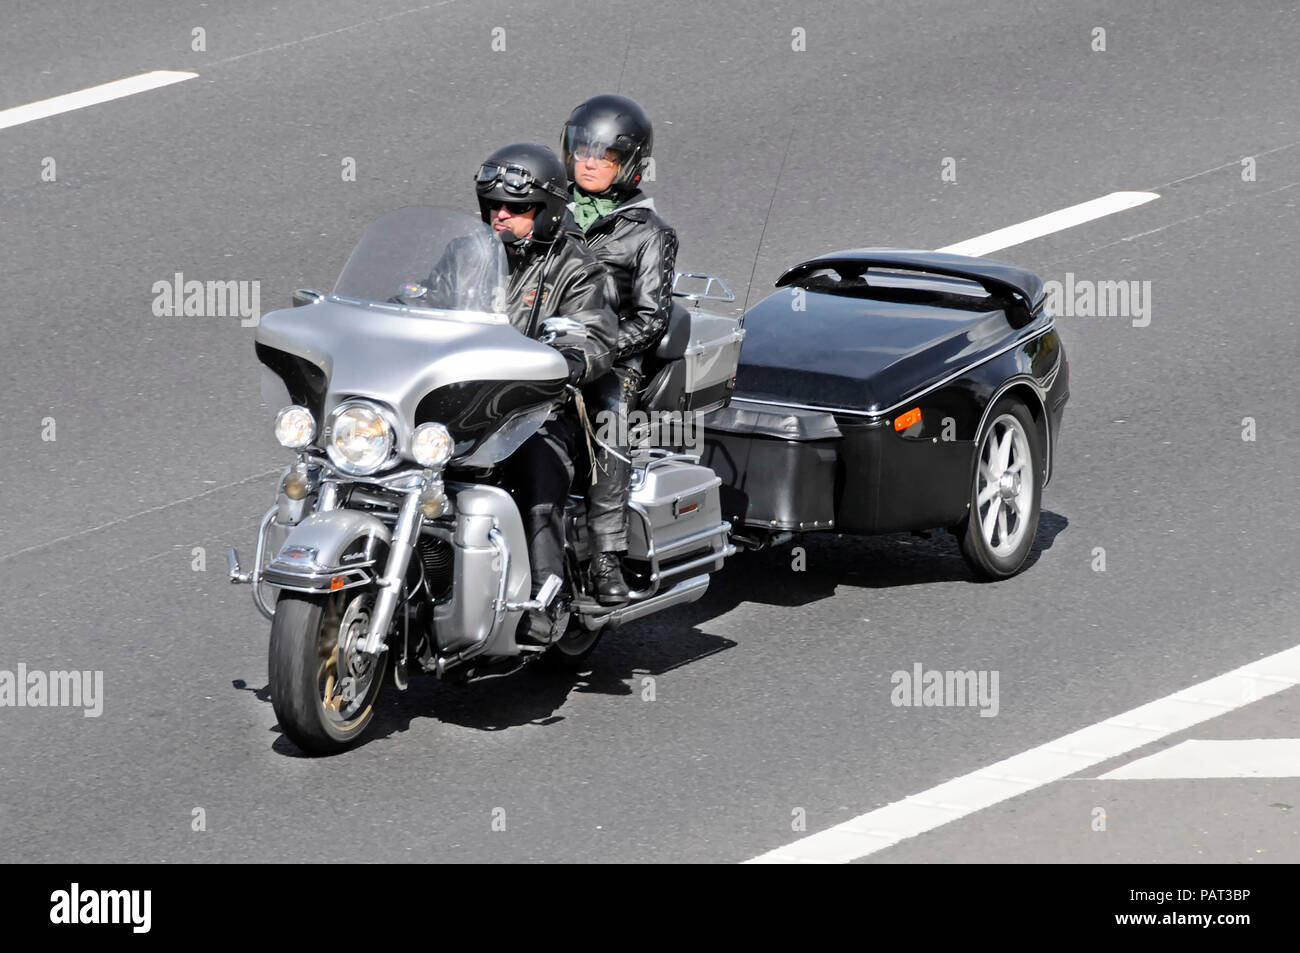 Homme portant des conducteurs de moto & microphone woman riding motorbike leurs couple passager portant un casque inhabituelle de remorquage remorque sur autoroute britannique Banque D'Images